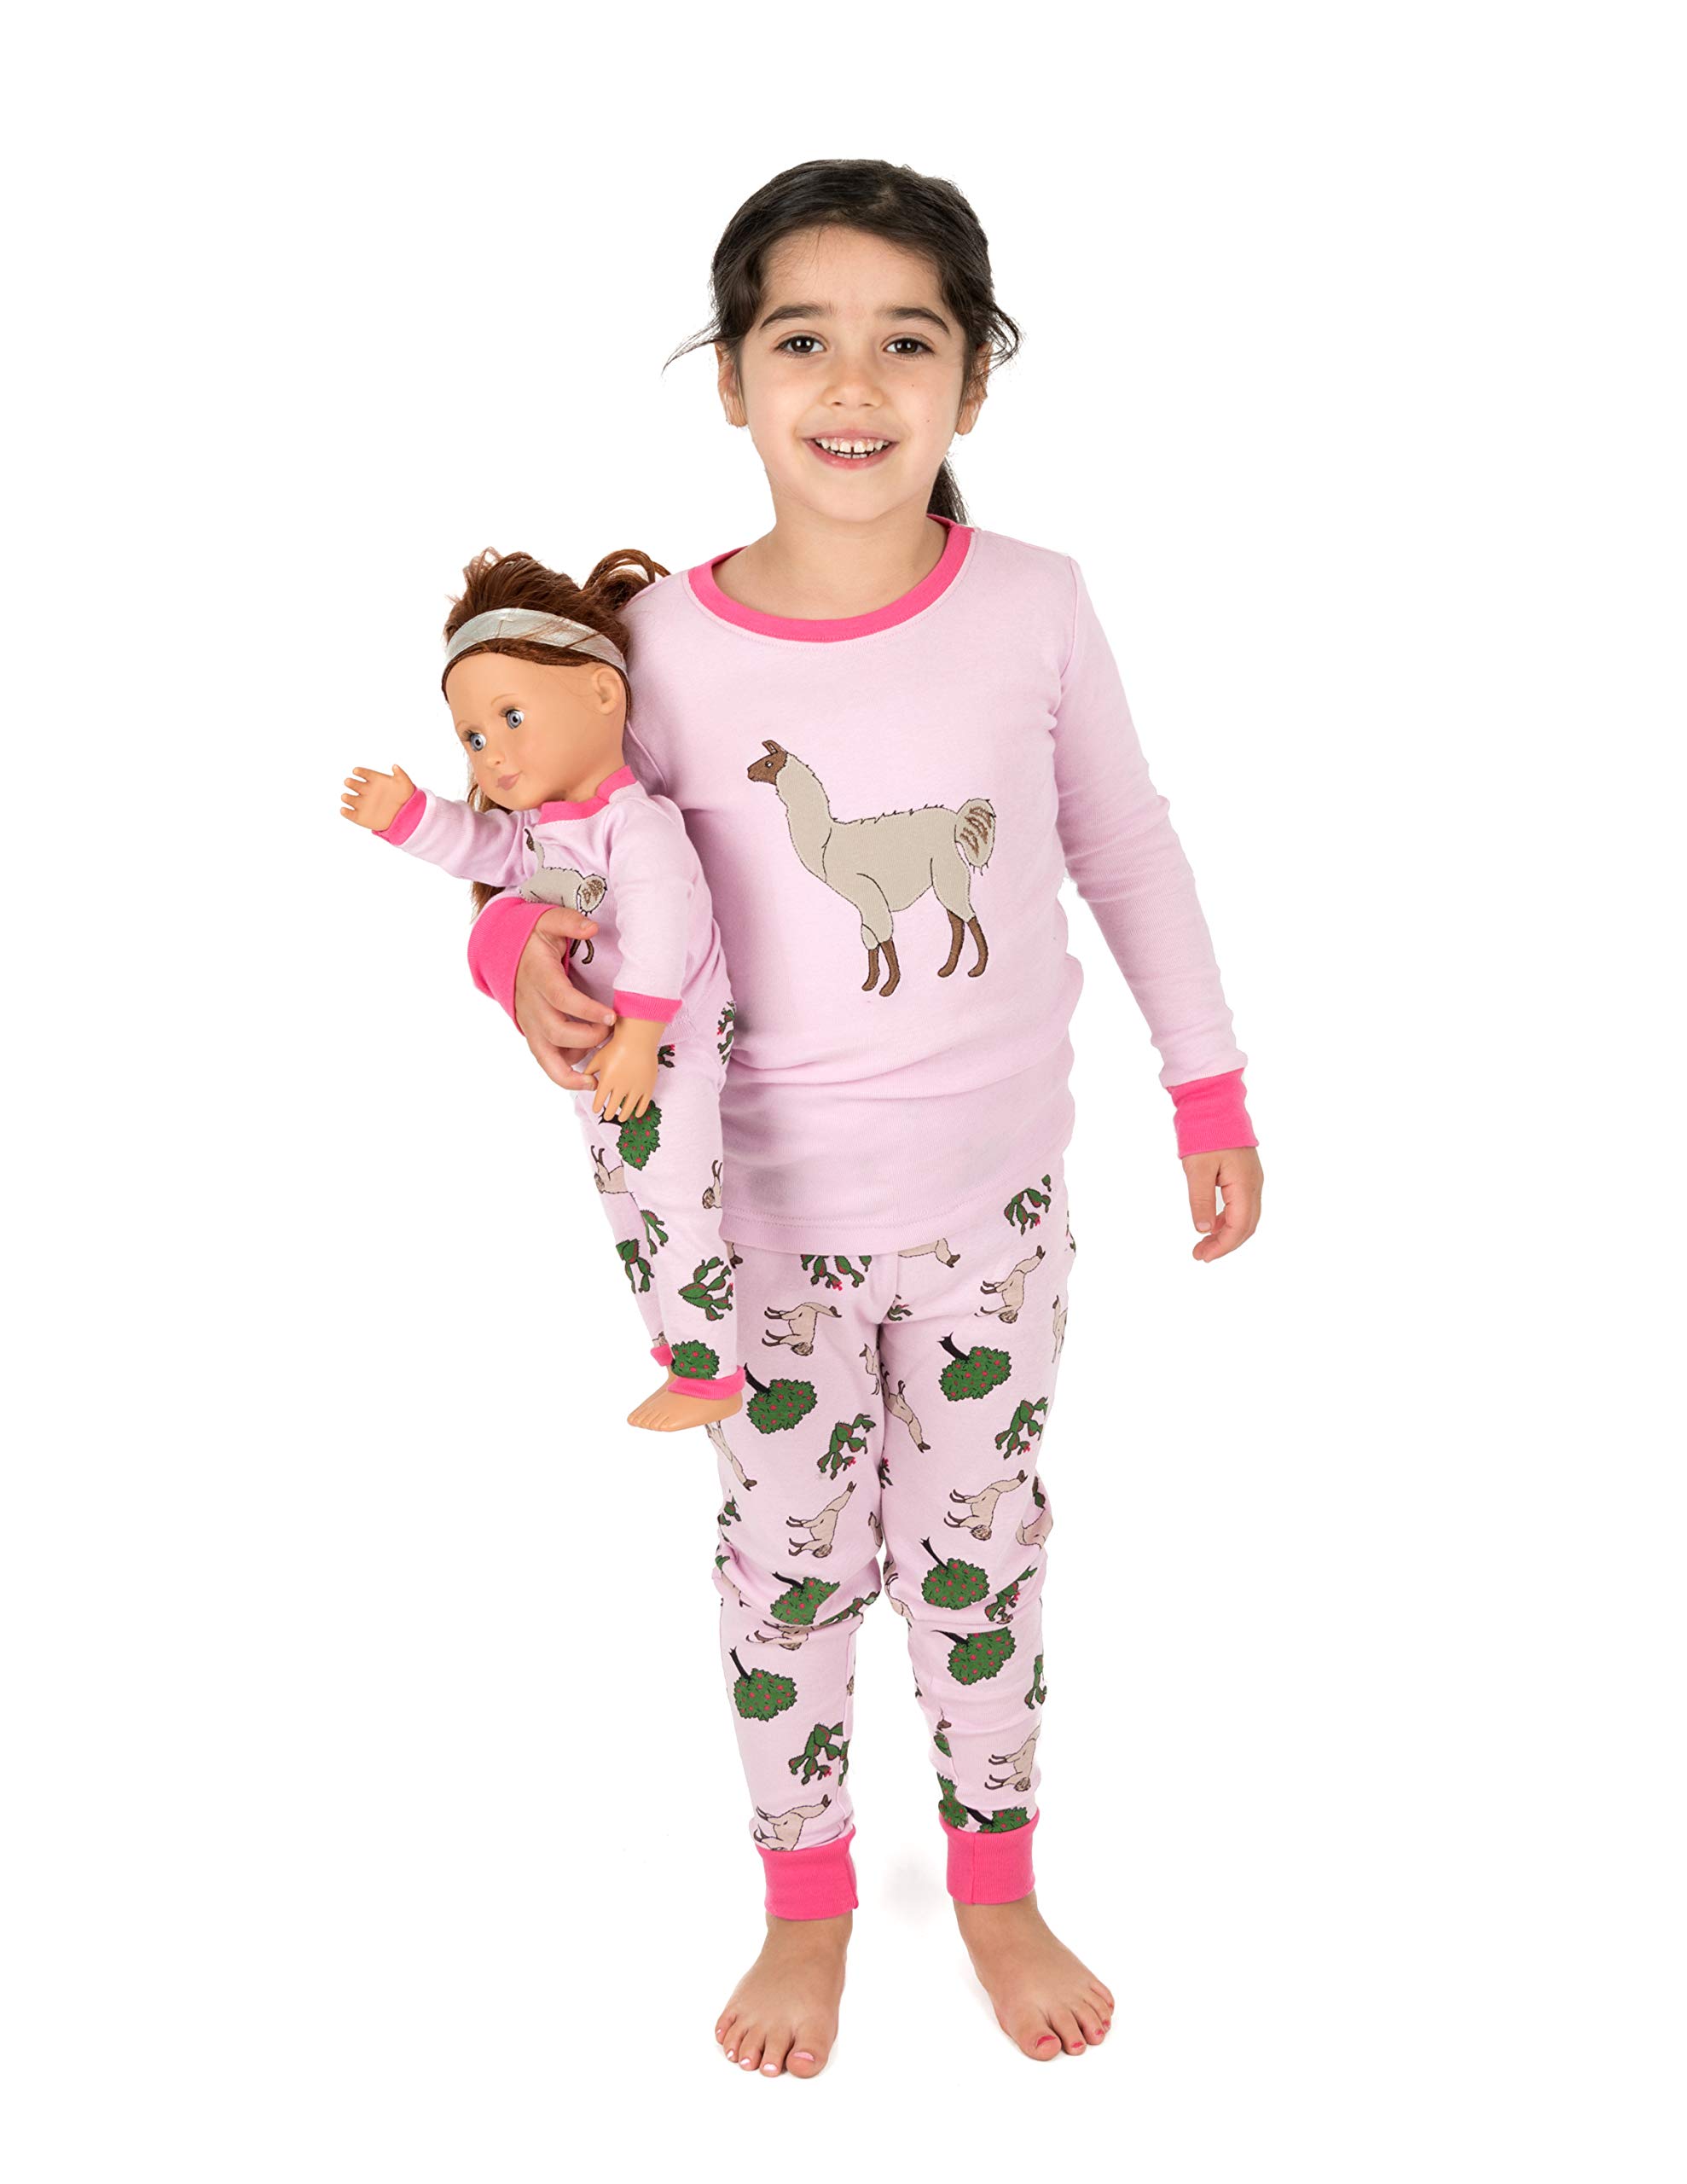 Leveret Kids & Toddler & Toddler Pajamas Matching Doll & Girls Pajamas 100%  Cotton Llama (Size 6 Years) 